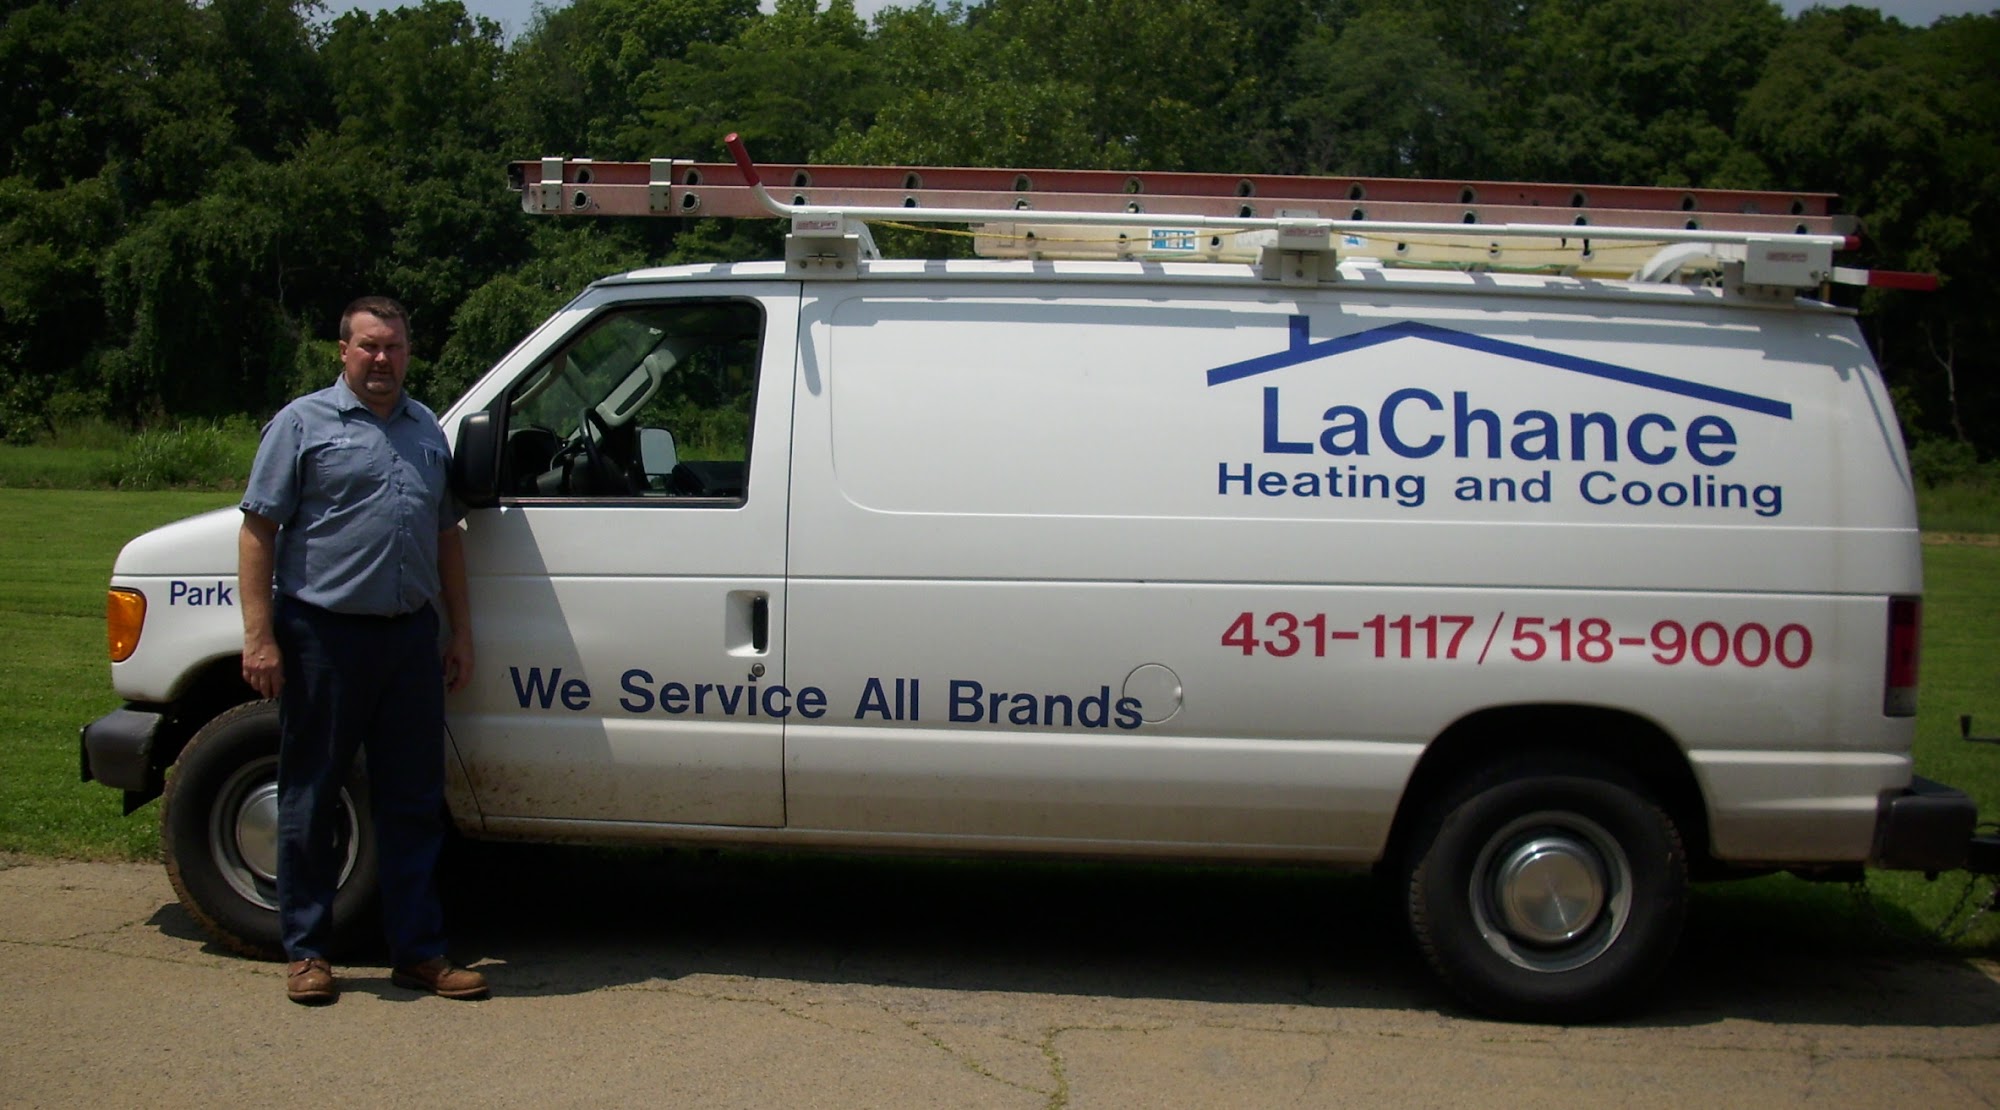 LaChance Heating & Cooling 22 Crane St Suite A, Park Hills Missouri 63601